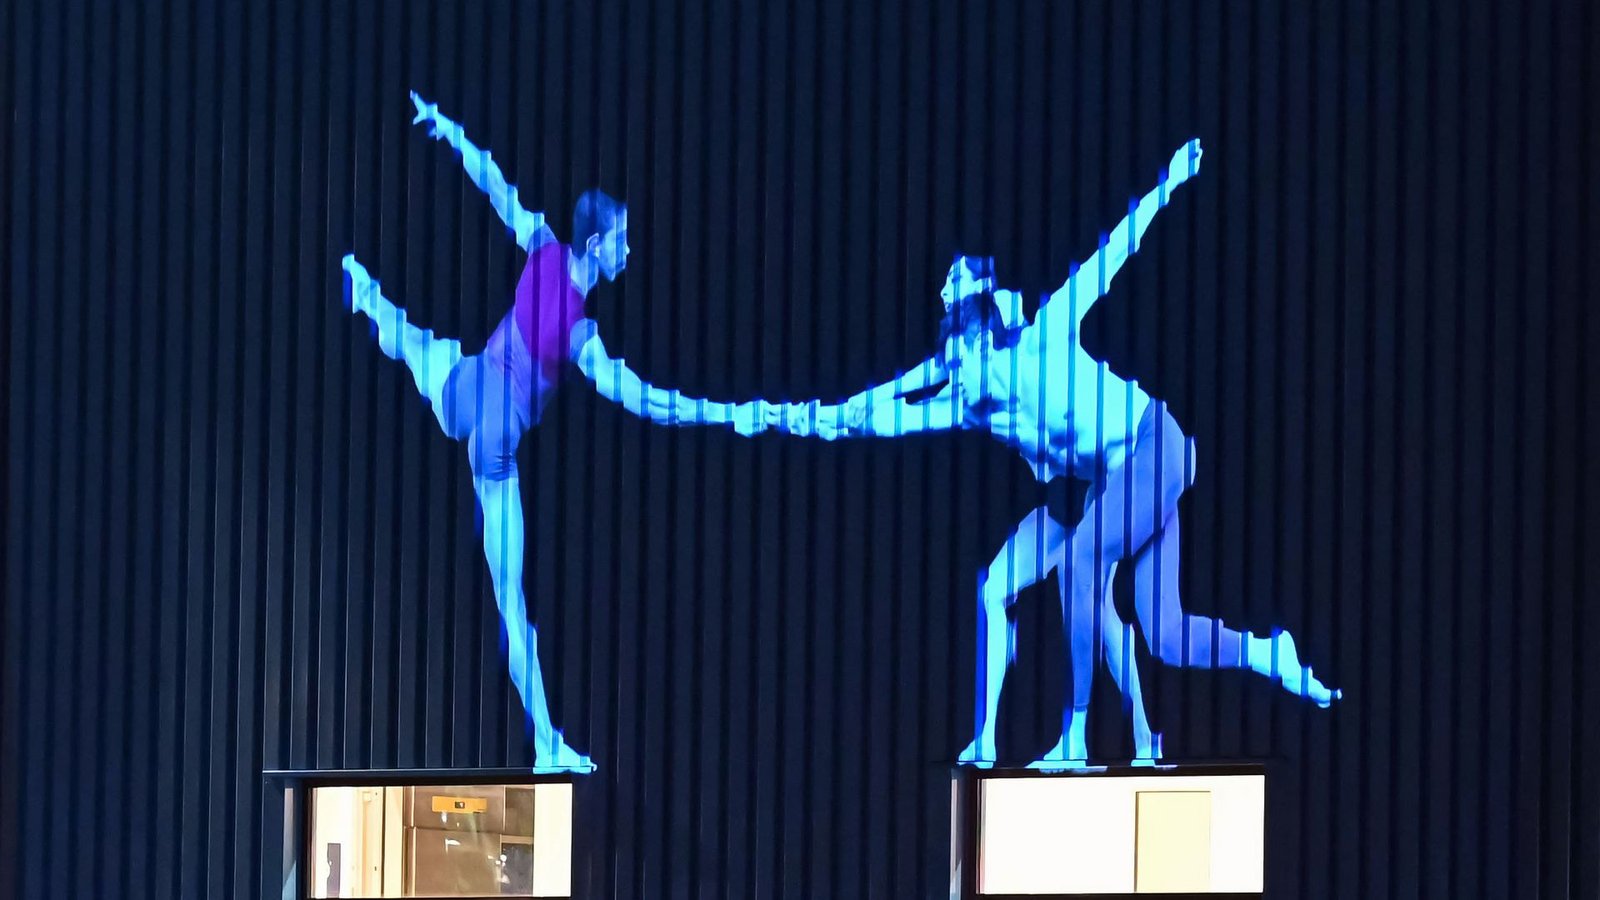 Bei dem Projekt "Ballet of the City" werden Choreografien des Karlsruher Staatsballetts im gesamten Stadtraum an Wände und Gebäude projiziert.Foto: Uli Deck/dpa